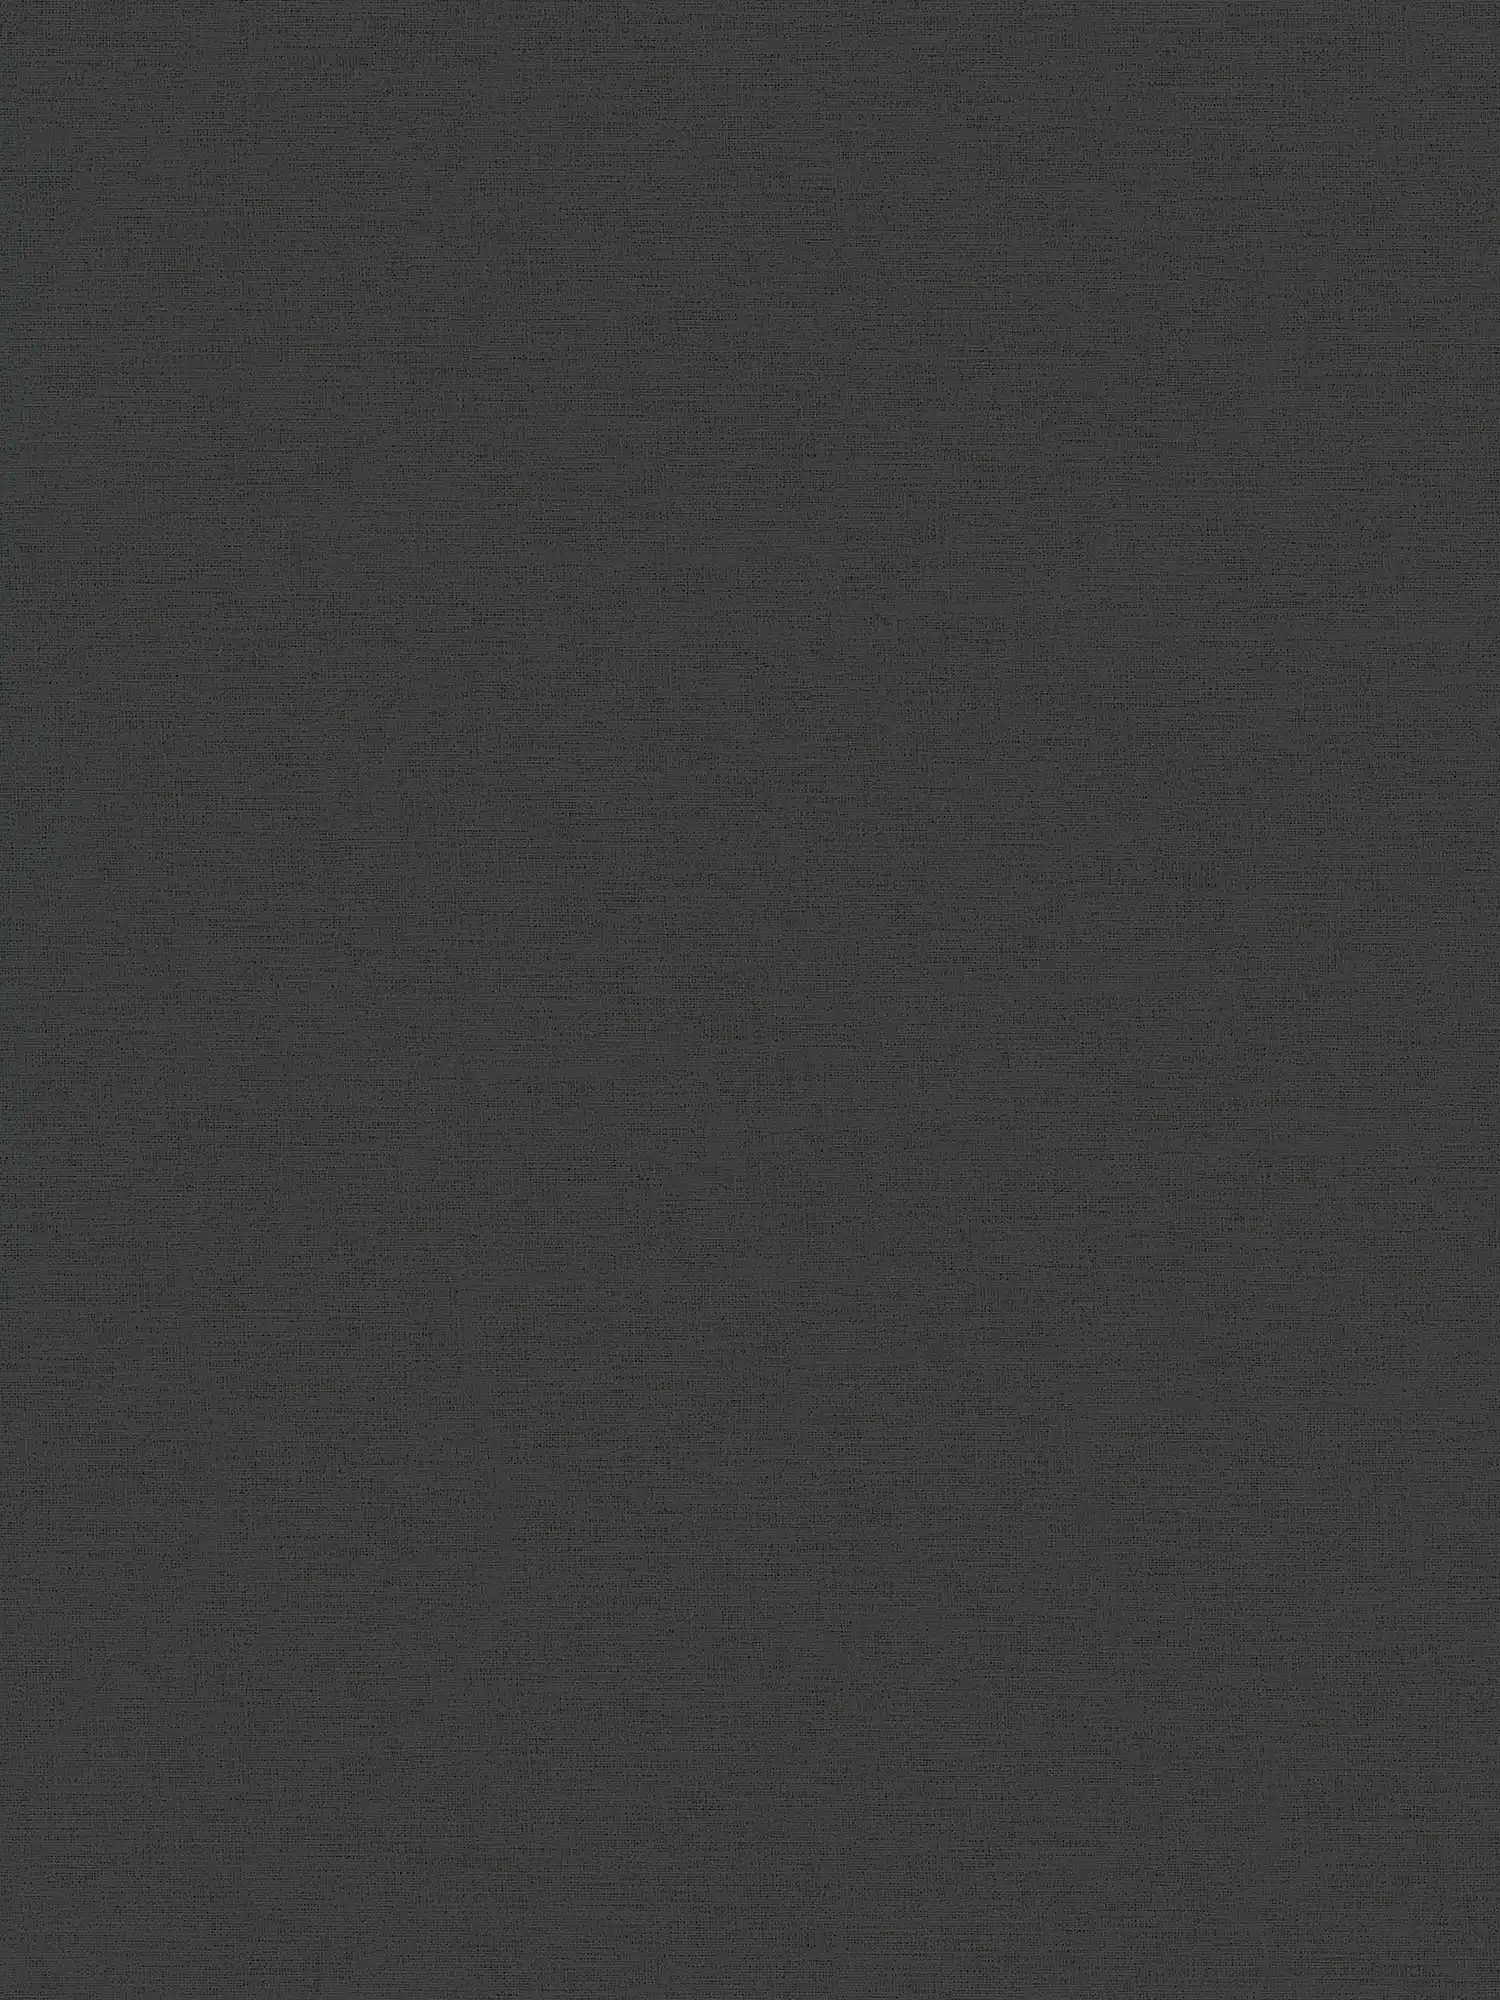         Schwarze Tapete einfarbig mit textiler Prägestruktur
    